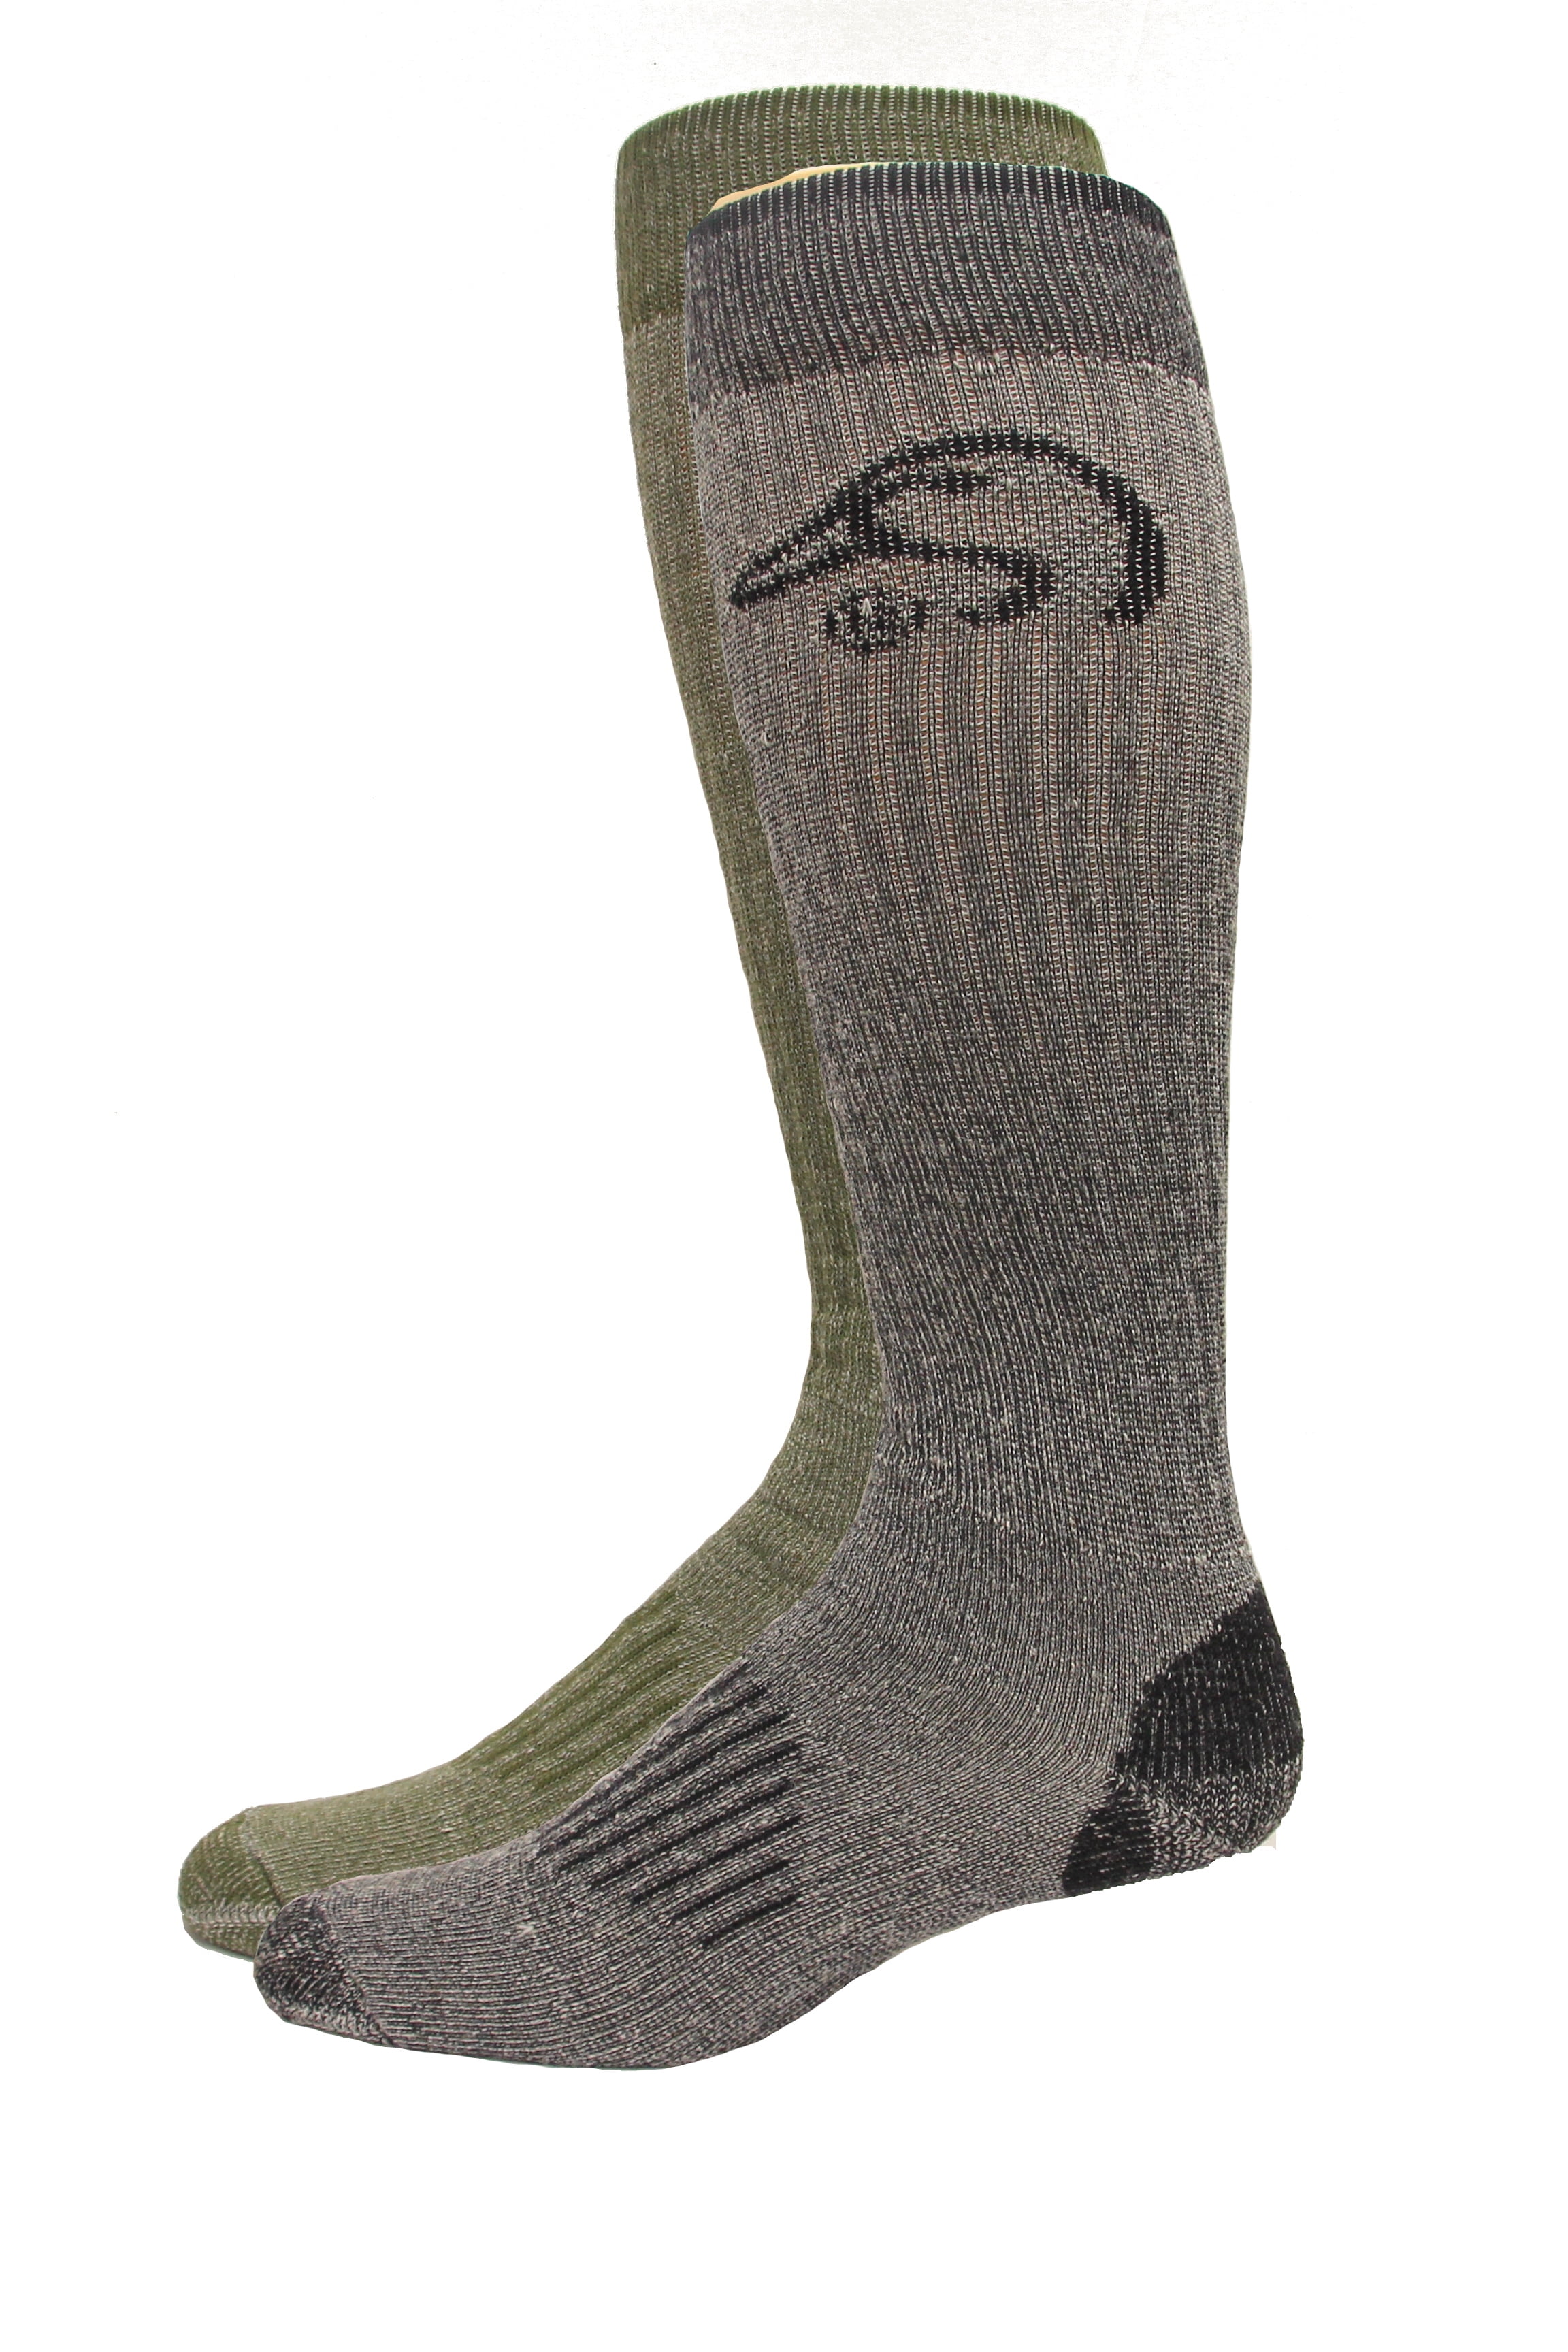 Ducks Unlimited All Season Merino Wool Boot Socks, 1 Pair, Brown 